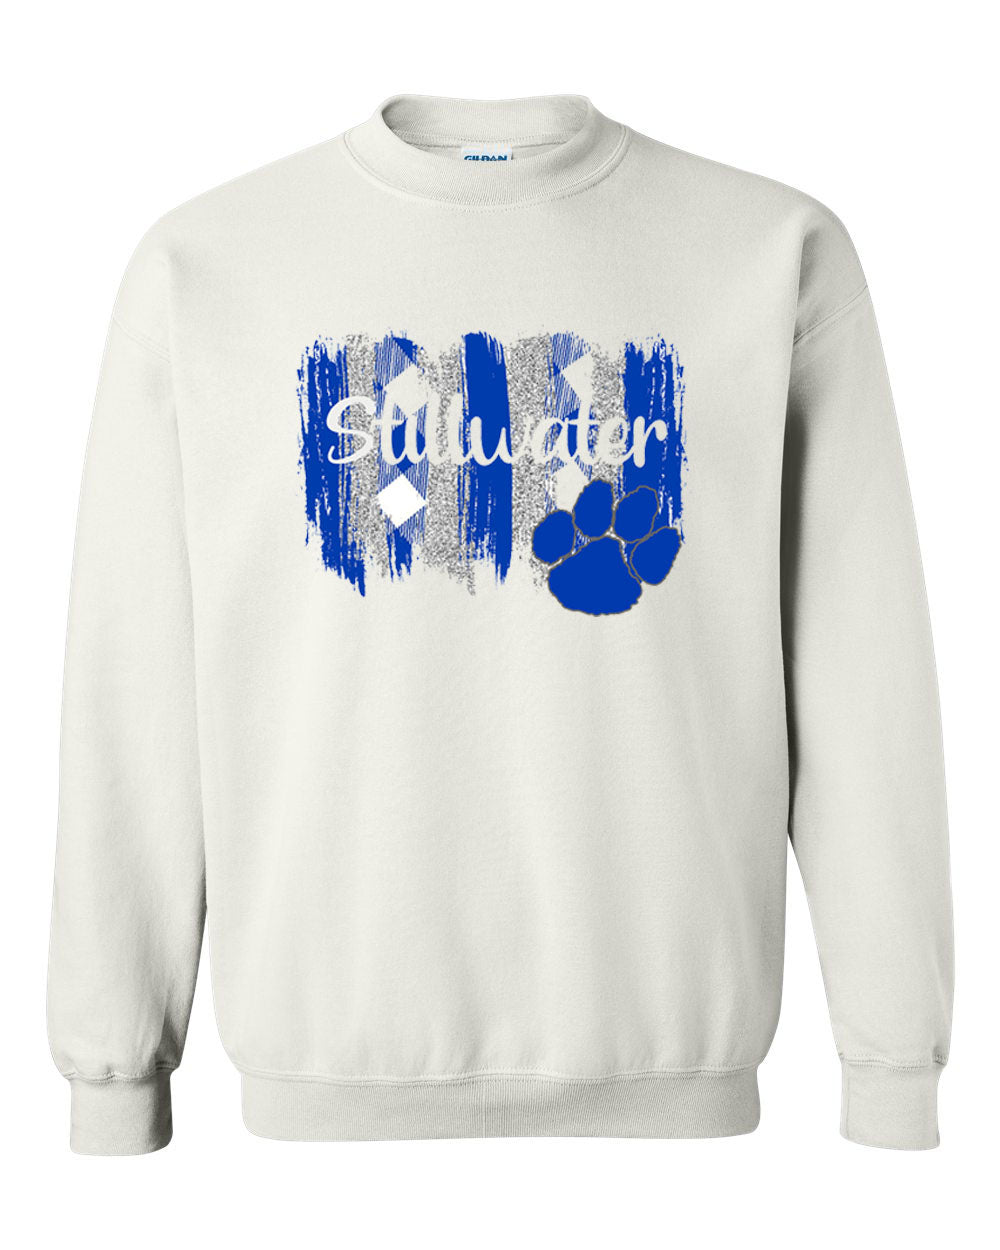 Stillwater Design 5 non hooded sweatshirt